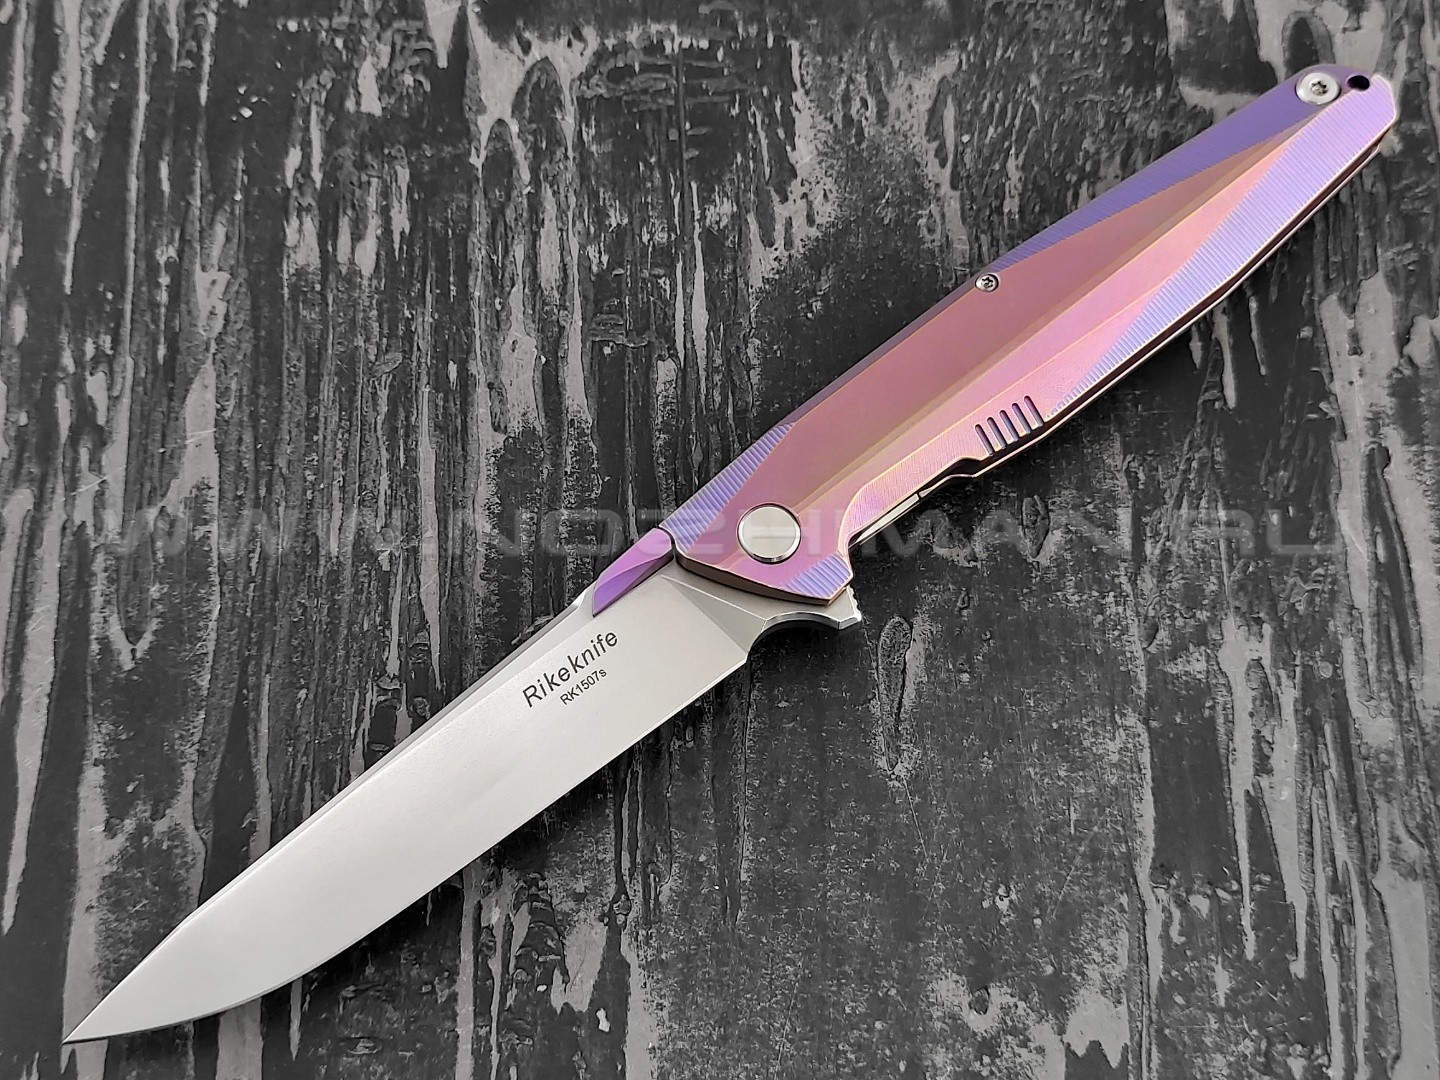 Нож Rike Knife RK1507S-PB сталь S35VN, рукоять титан